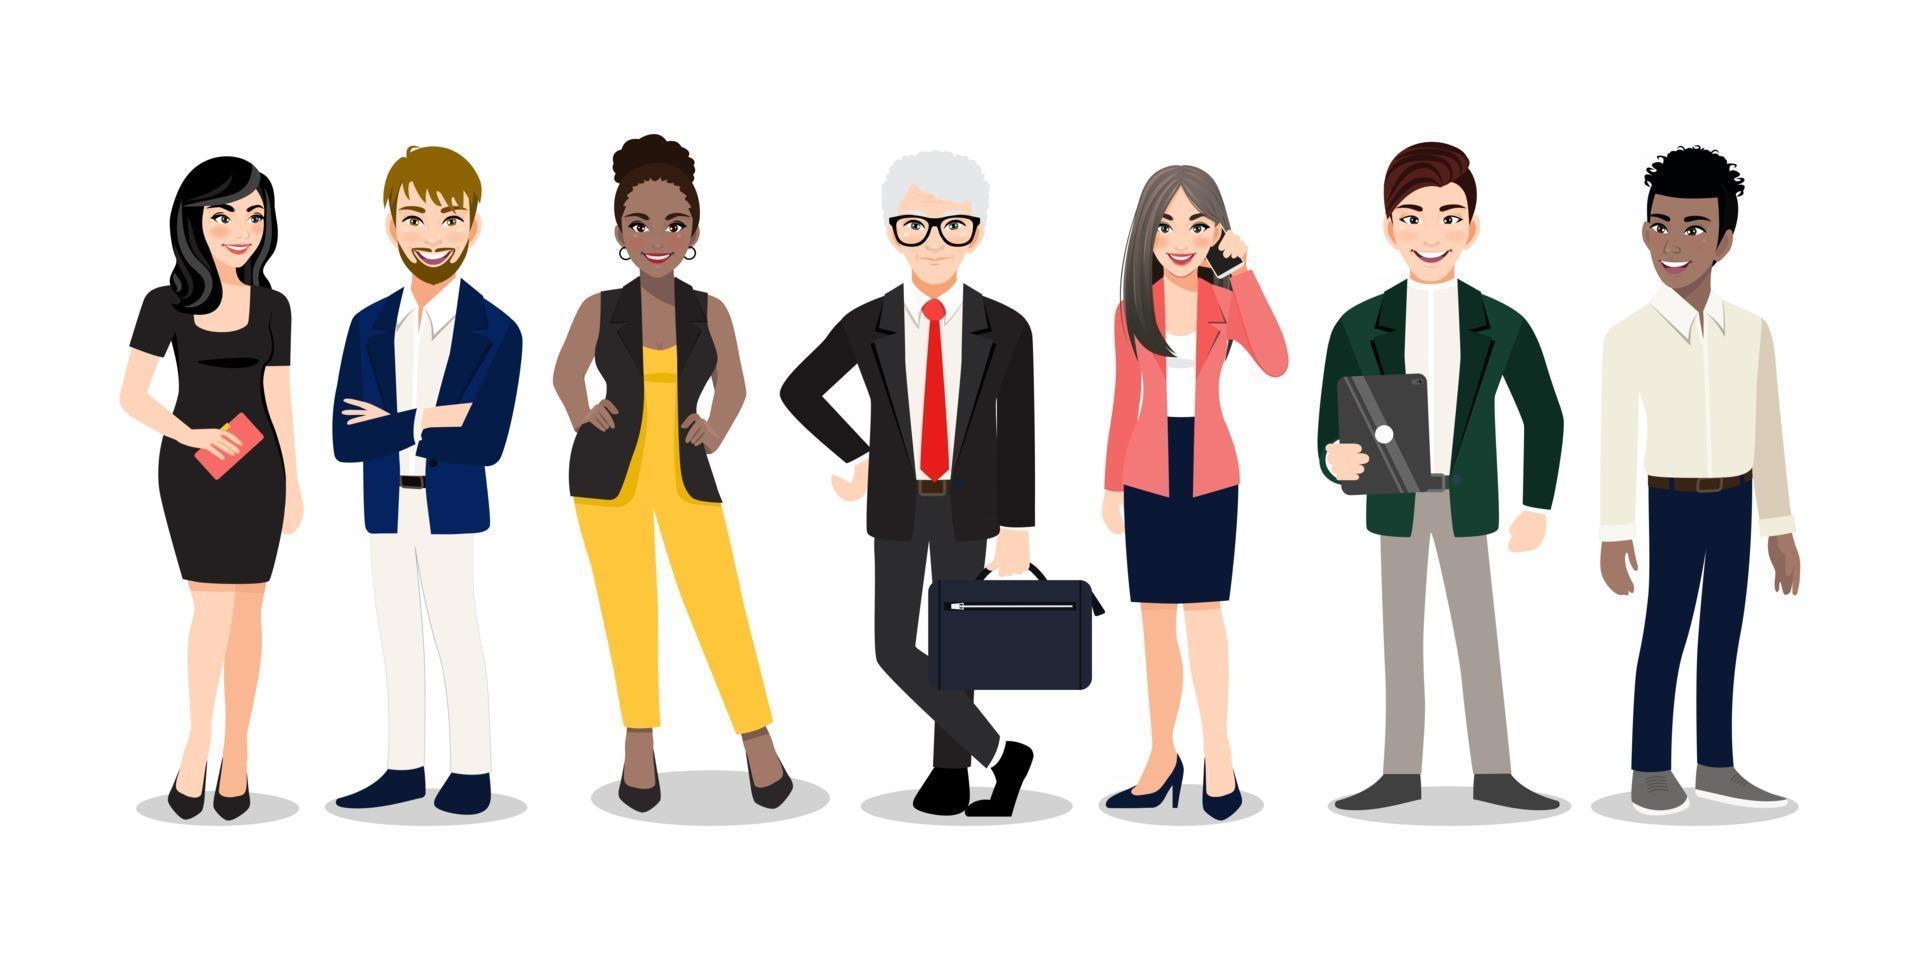 trabalhadores de escritório ou equipe multinacional de negócios em pé e sorrindo juntos. ilustração em vetor de diversos desenhos animados de homens e mulheres de várias raças, idades e tipos de corpo em trajes de escritório.